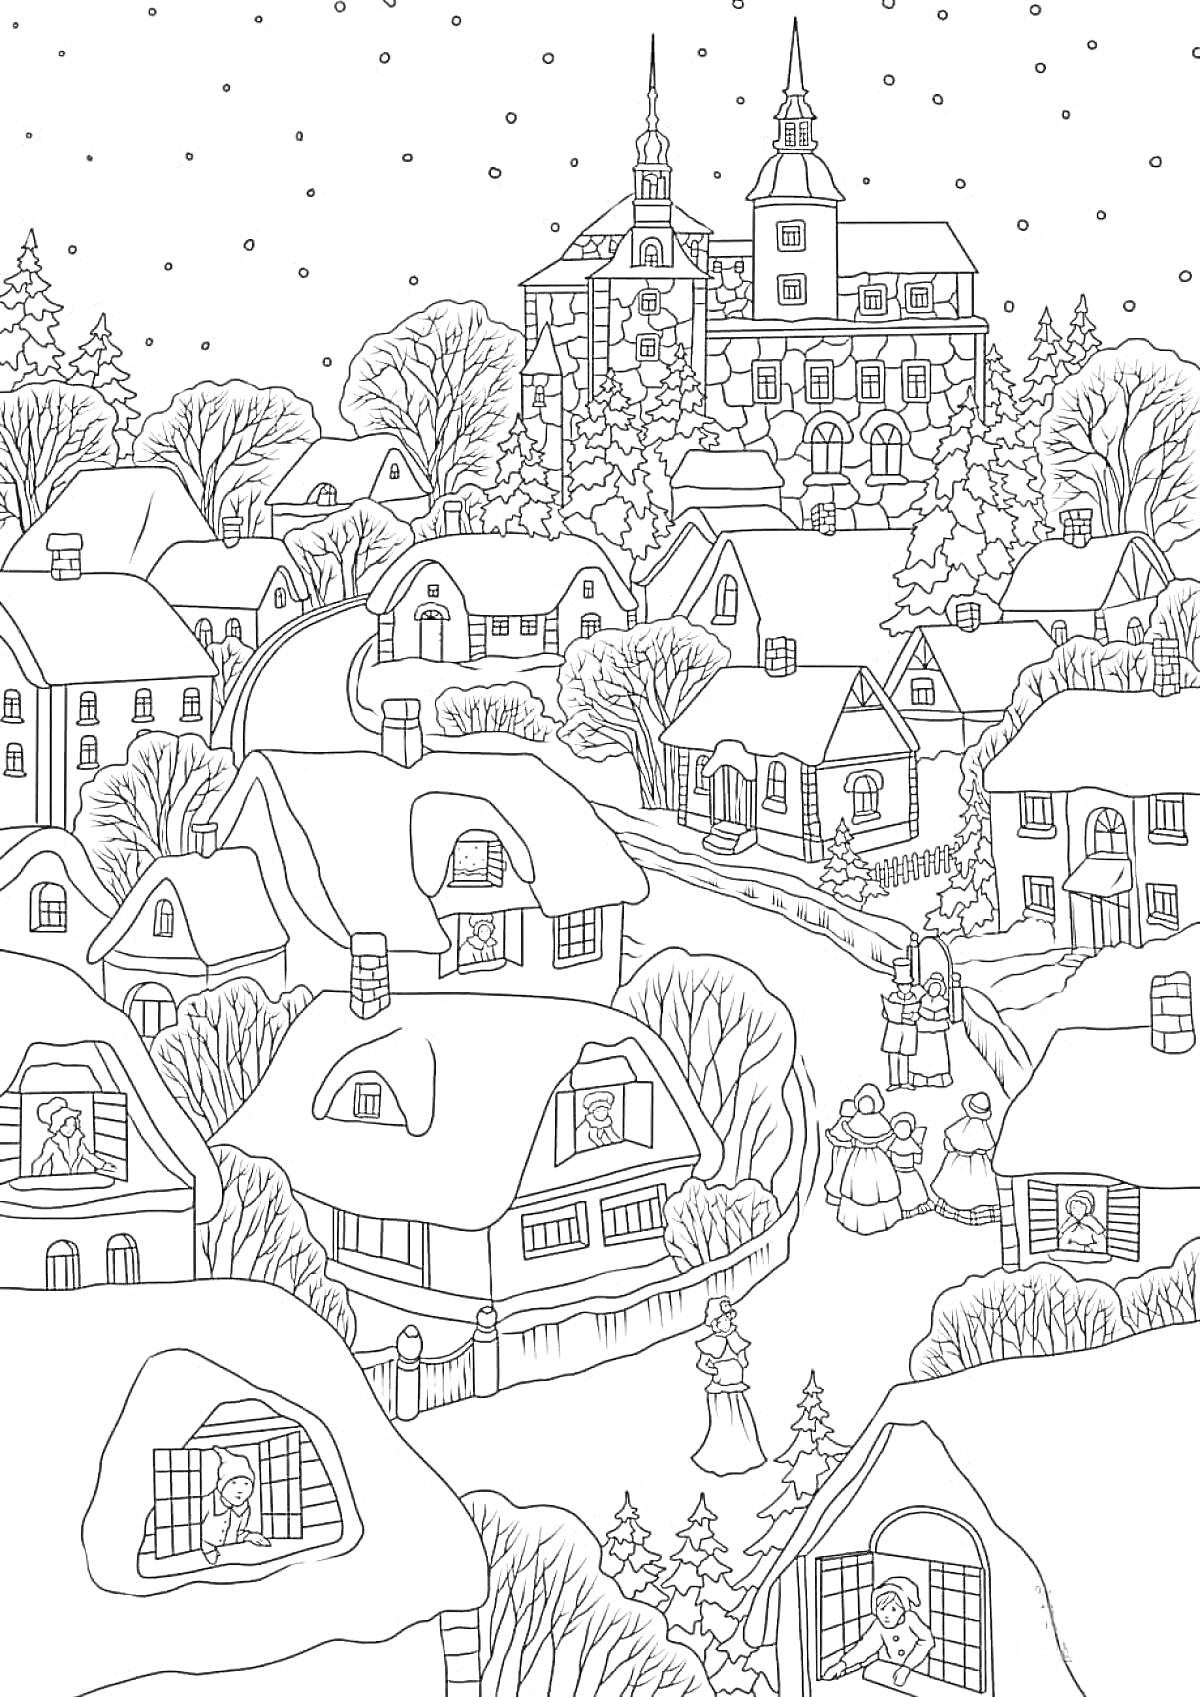 Раскраска Зимняя деревня с домами, улицами, засыпанными снегом, с деревьями и зданием с башнями на заднем плане; на изображении также изображены люди, гуляющие по деревне.